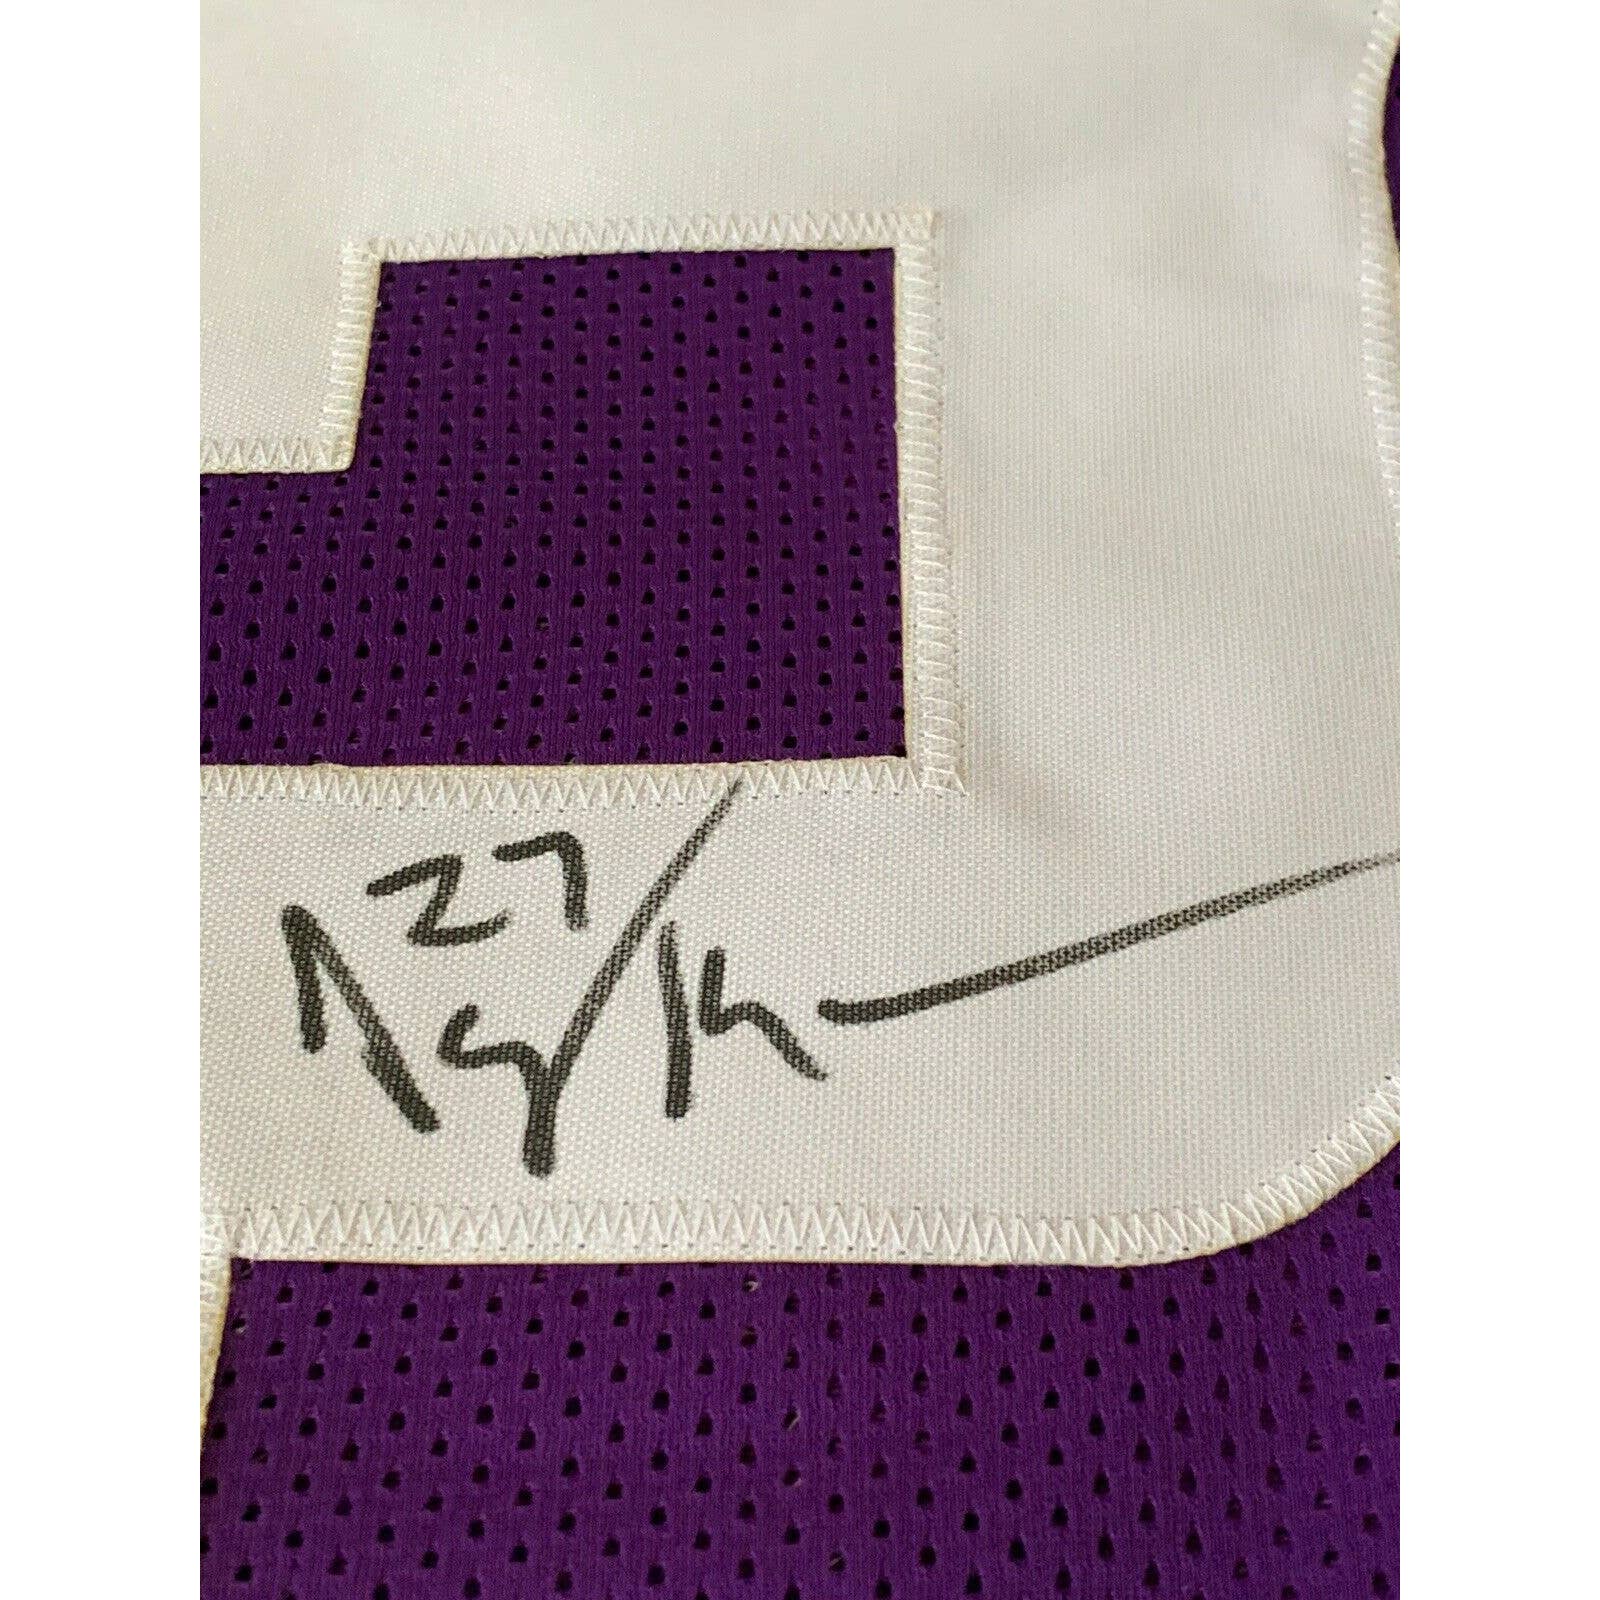 Jayron Kearse Autographed/Signed Jersey JSA COA Minnesota Vikings - TreasuresEvolved